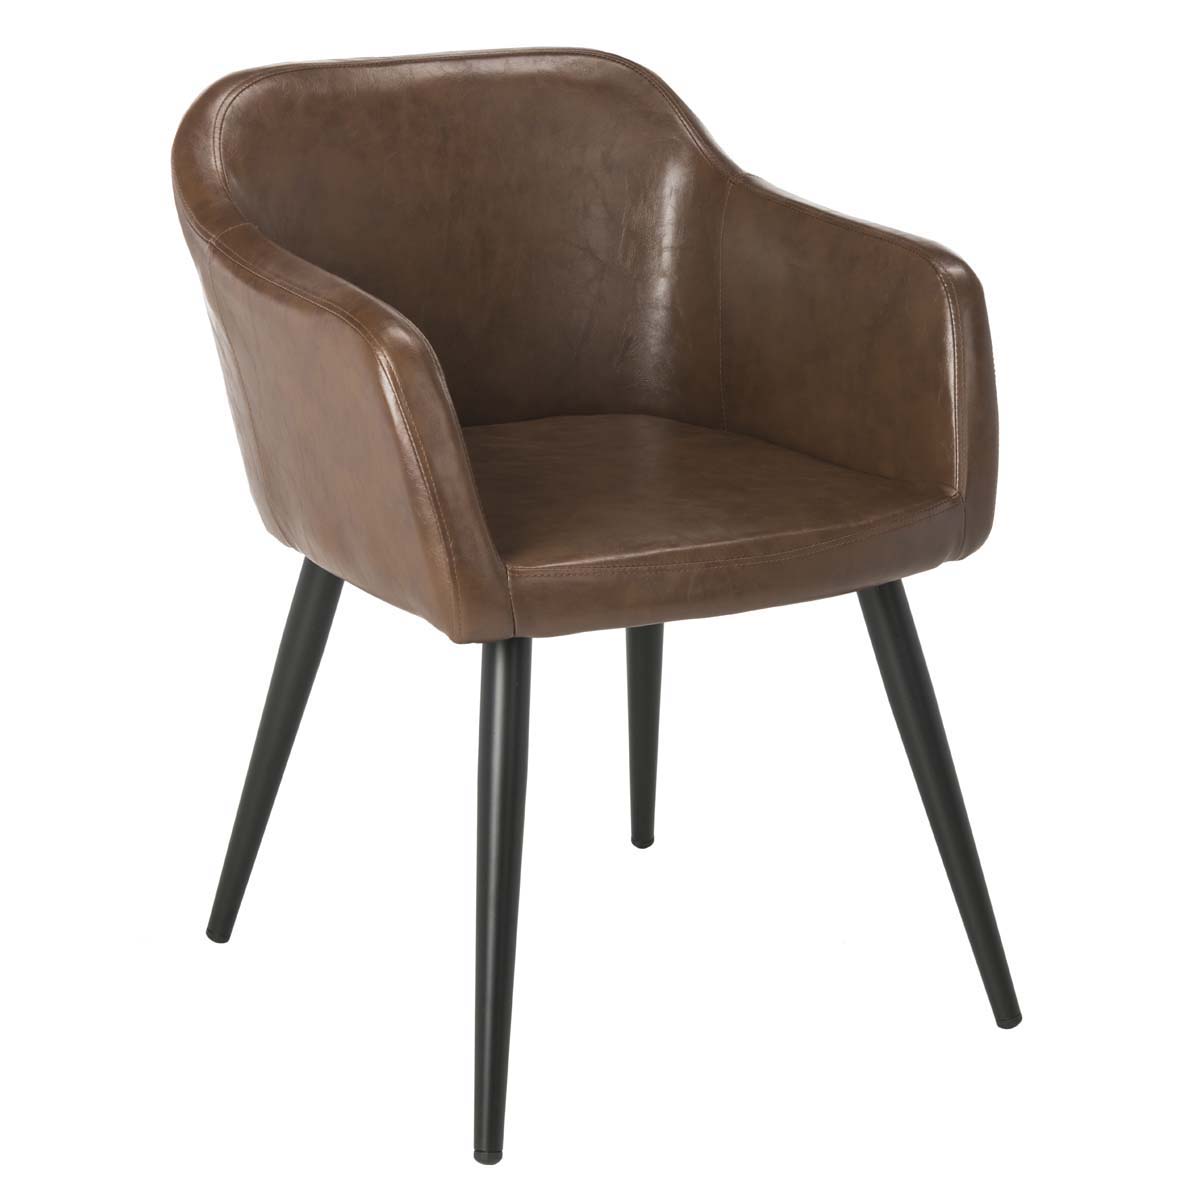 Safavieh Adalena Accent Chair , ACH7500 - Brown Pu/Black Legs